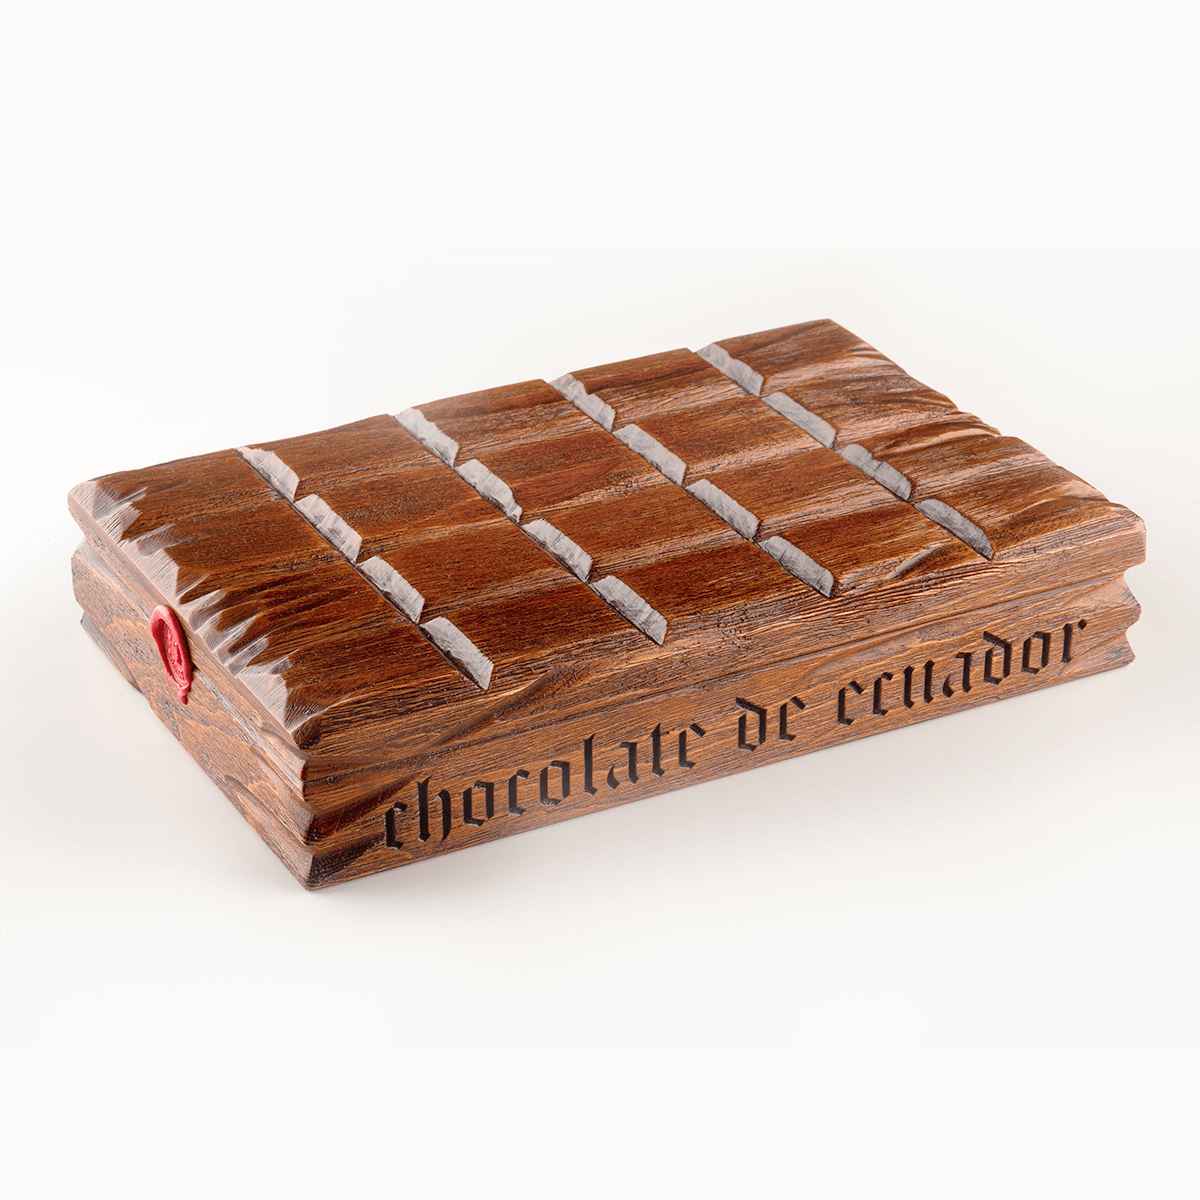 Шоколад из Эквадора, 1кг выдержанный Chocolate Manufacturera Nacional